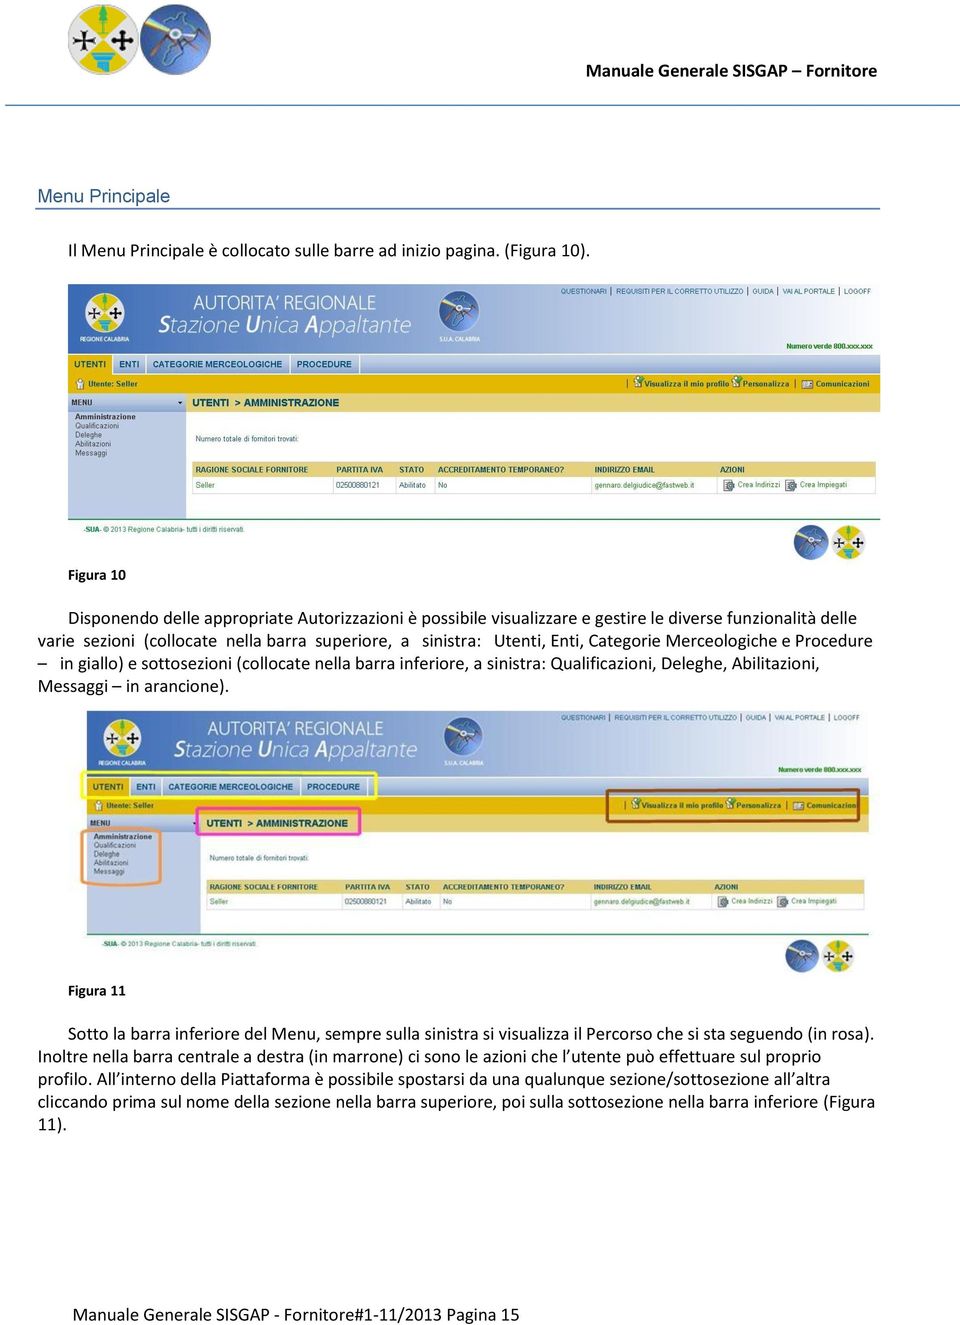 Categorie Merceologiche e Procedure in giallo) e sottosezioni (collocate nella barra inferiore, a sinistra: Qualificazioni, Deleghe, Abilitazioni, Messaggi in arancione).